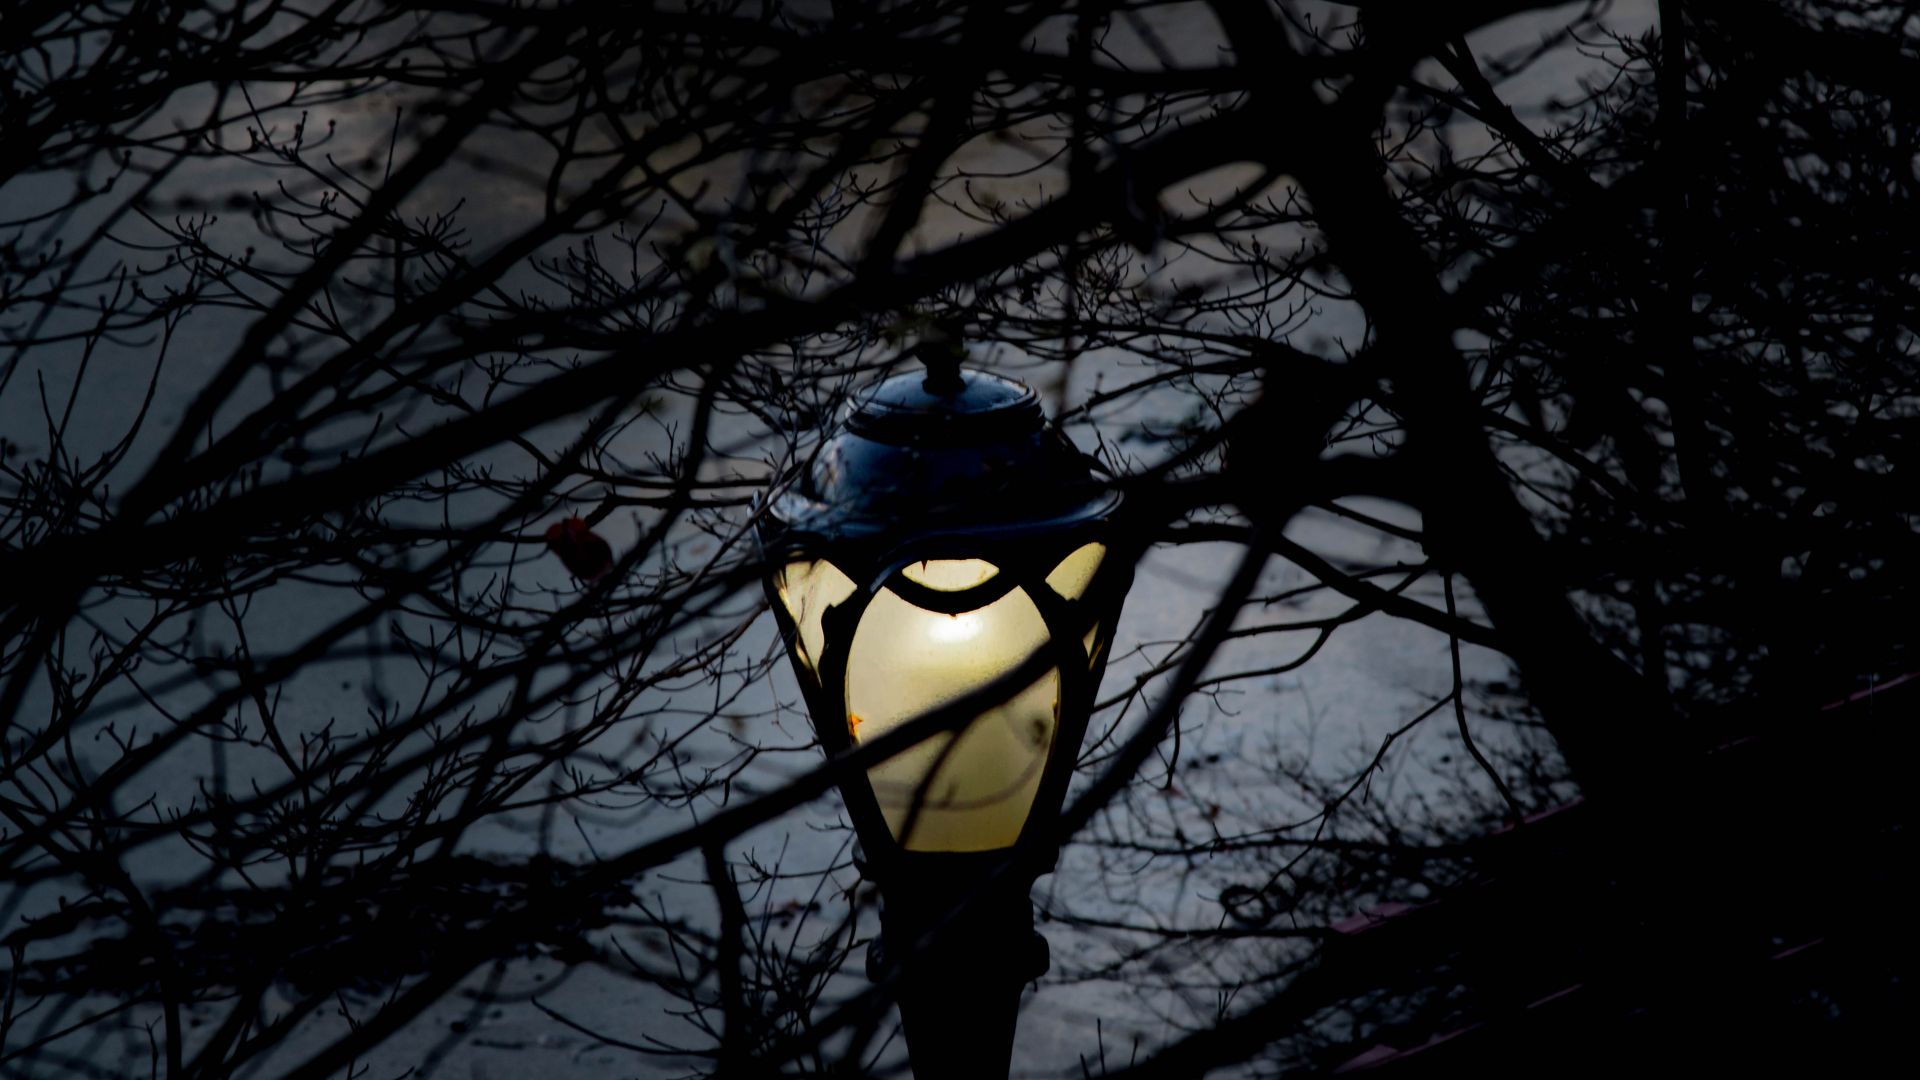 Wallpaper Lamp post in night